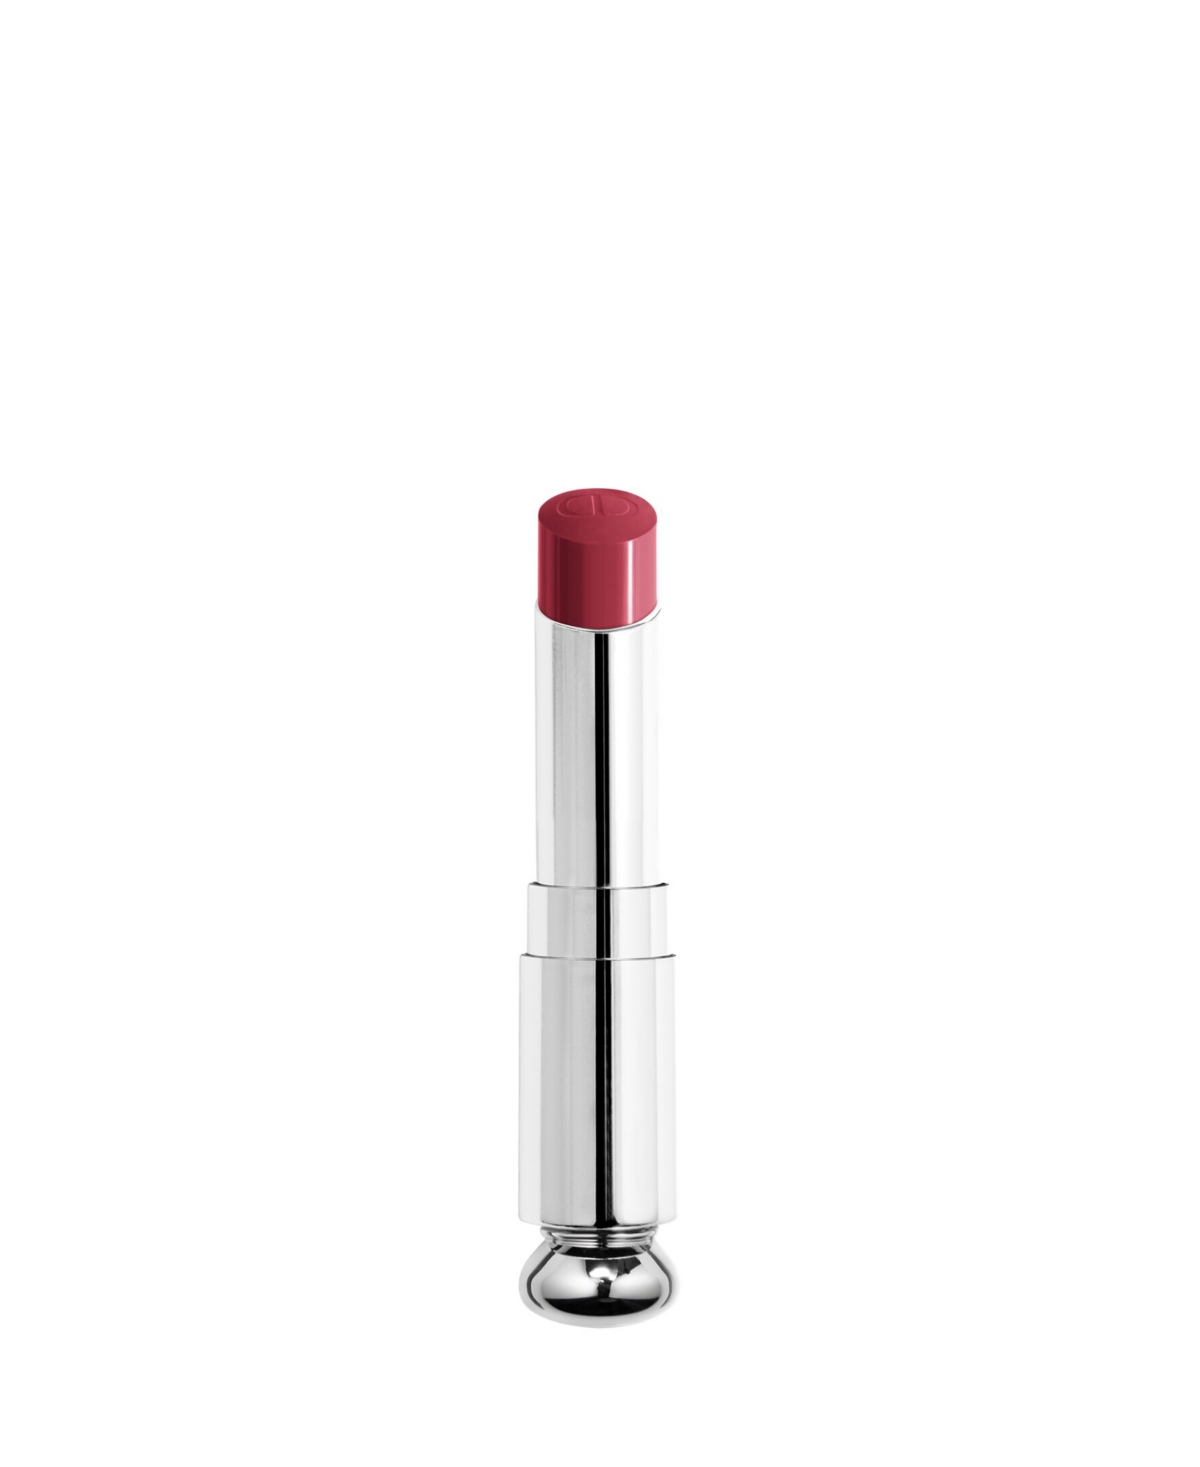 Dior Addict Shine Lipstick Refill In Mania (rosewood)